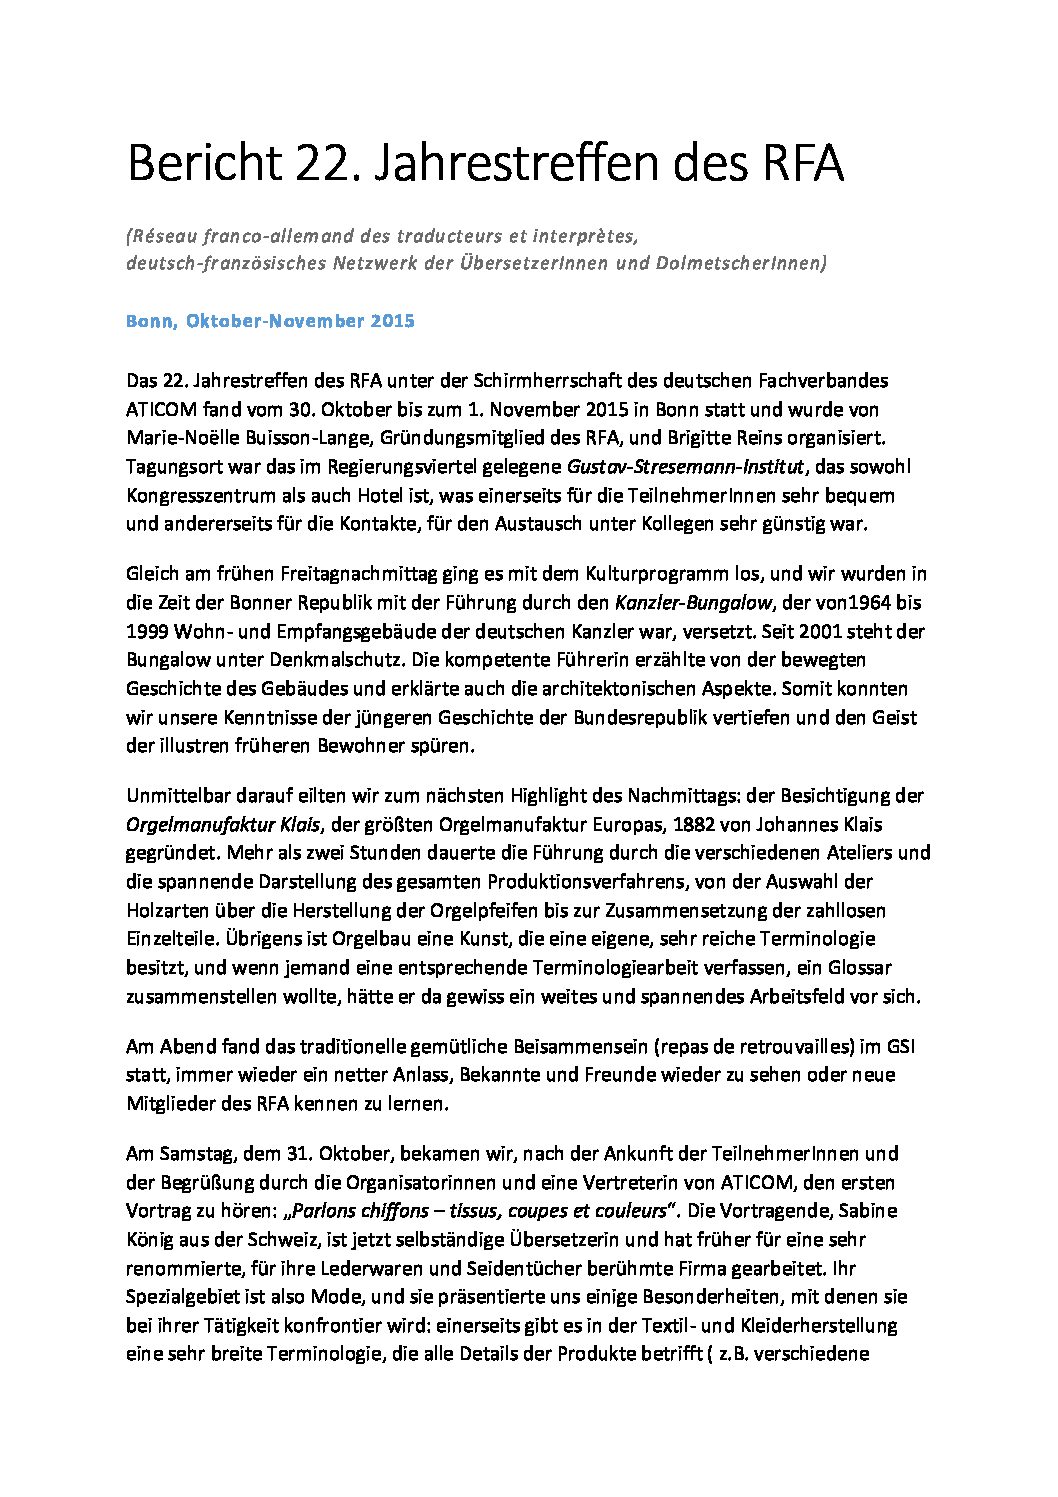 Image de présentation pour le document : Bericht 22. Jahrestreffen des RFA (Bonn)